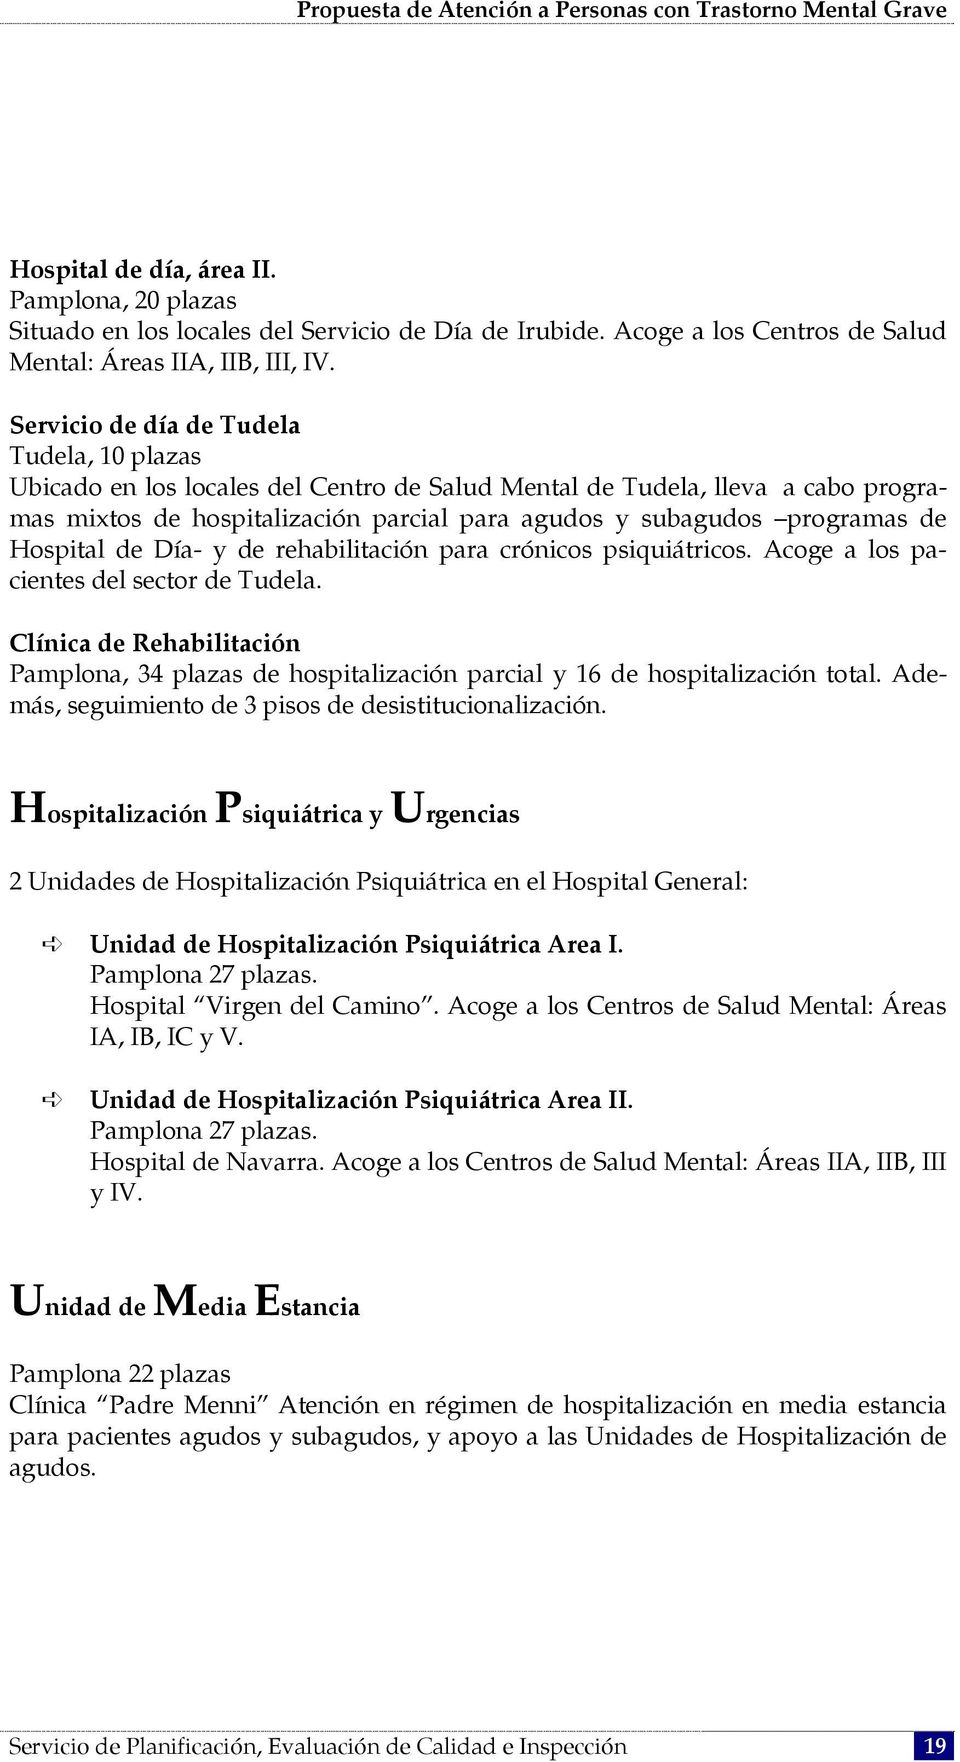 Hospital de Día- y de rehabilitación para crónicos psiquiátricos. Acoge a los pacientes del sector de Tudela.